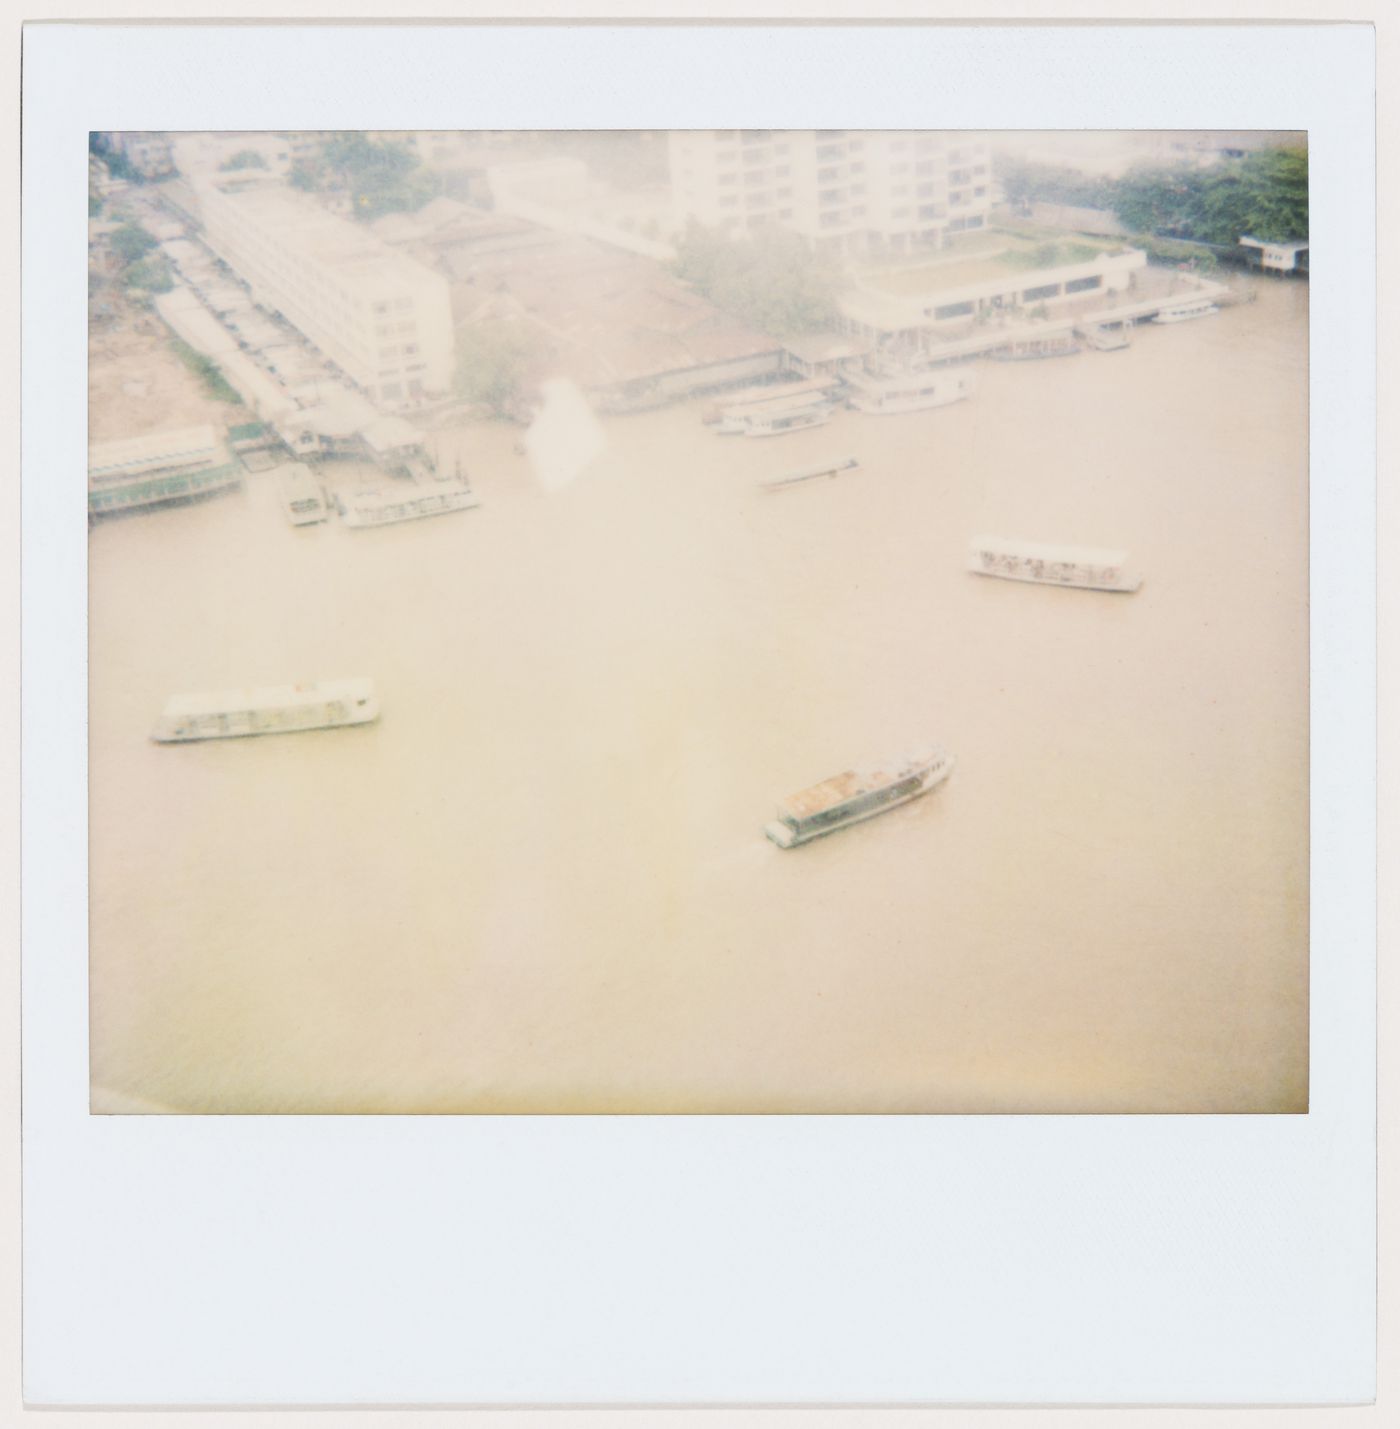 Boats in a river, Bangkok, Thailand